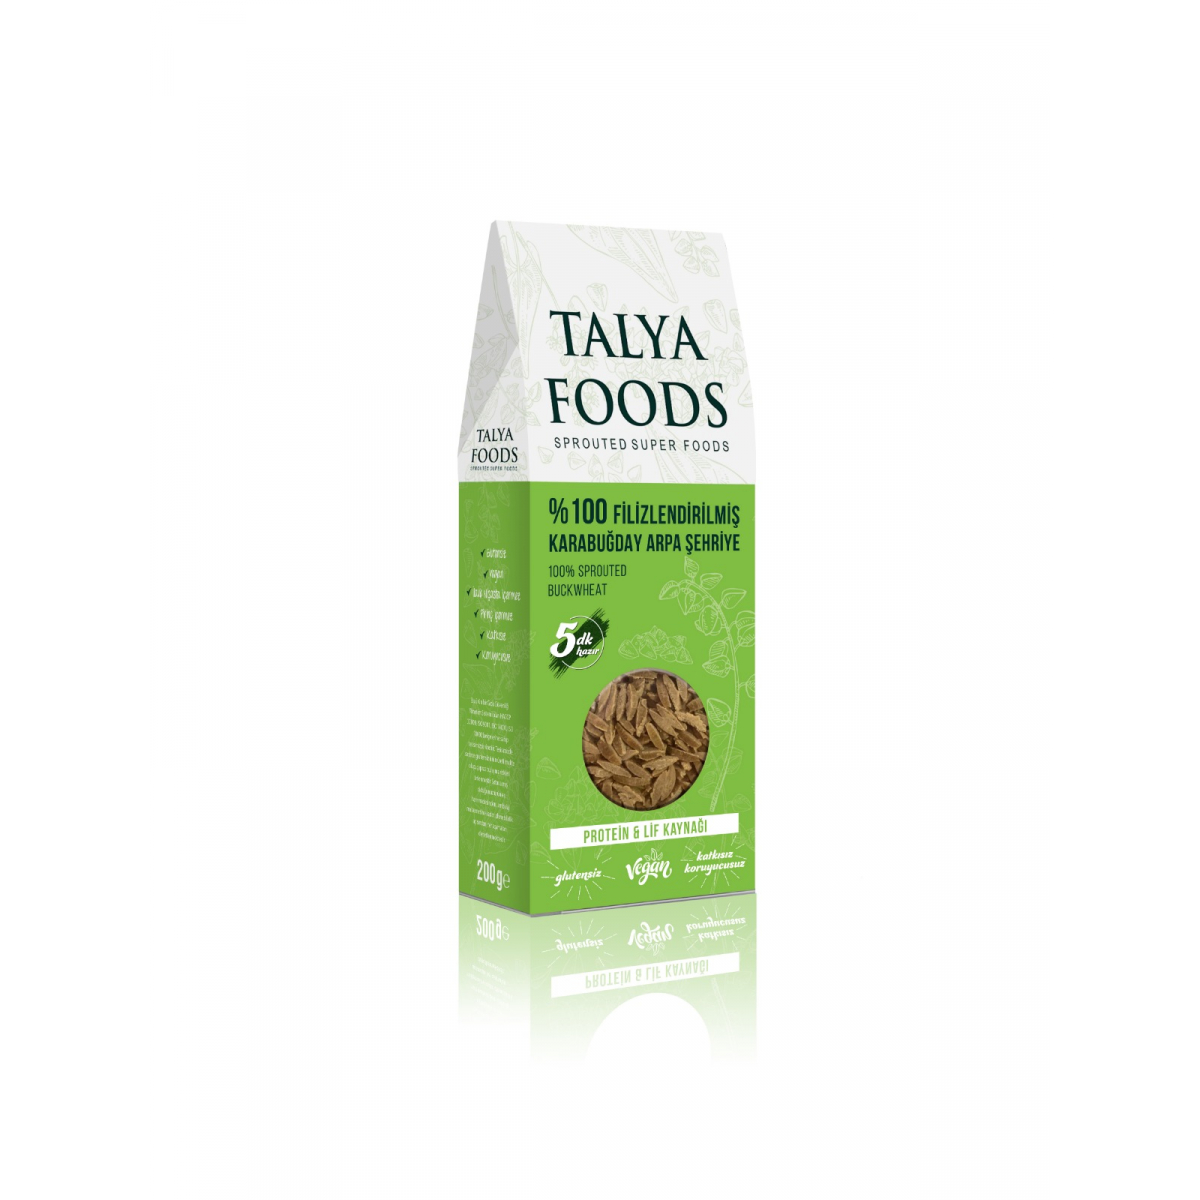 Talya Foods Filizlendirilmiş Çiğ Karabuğday Şehriye 200 G